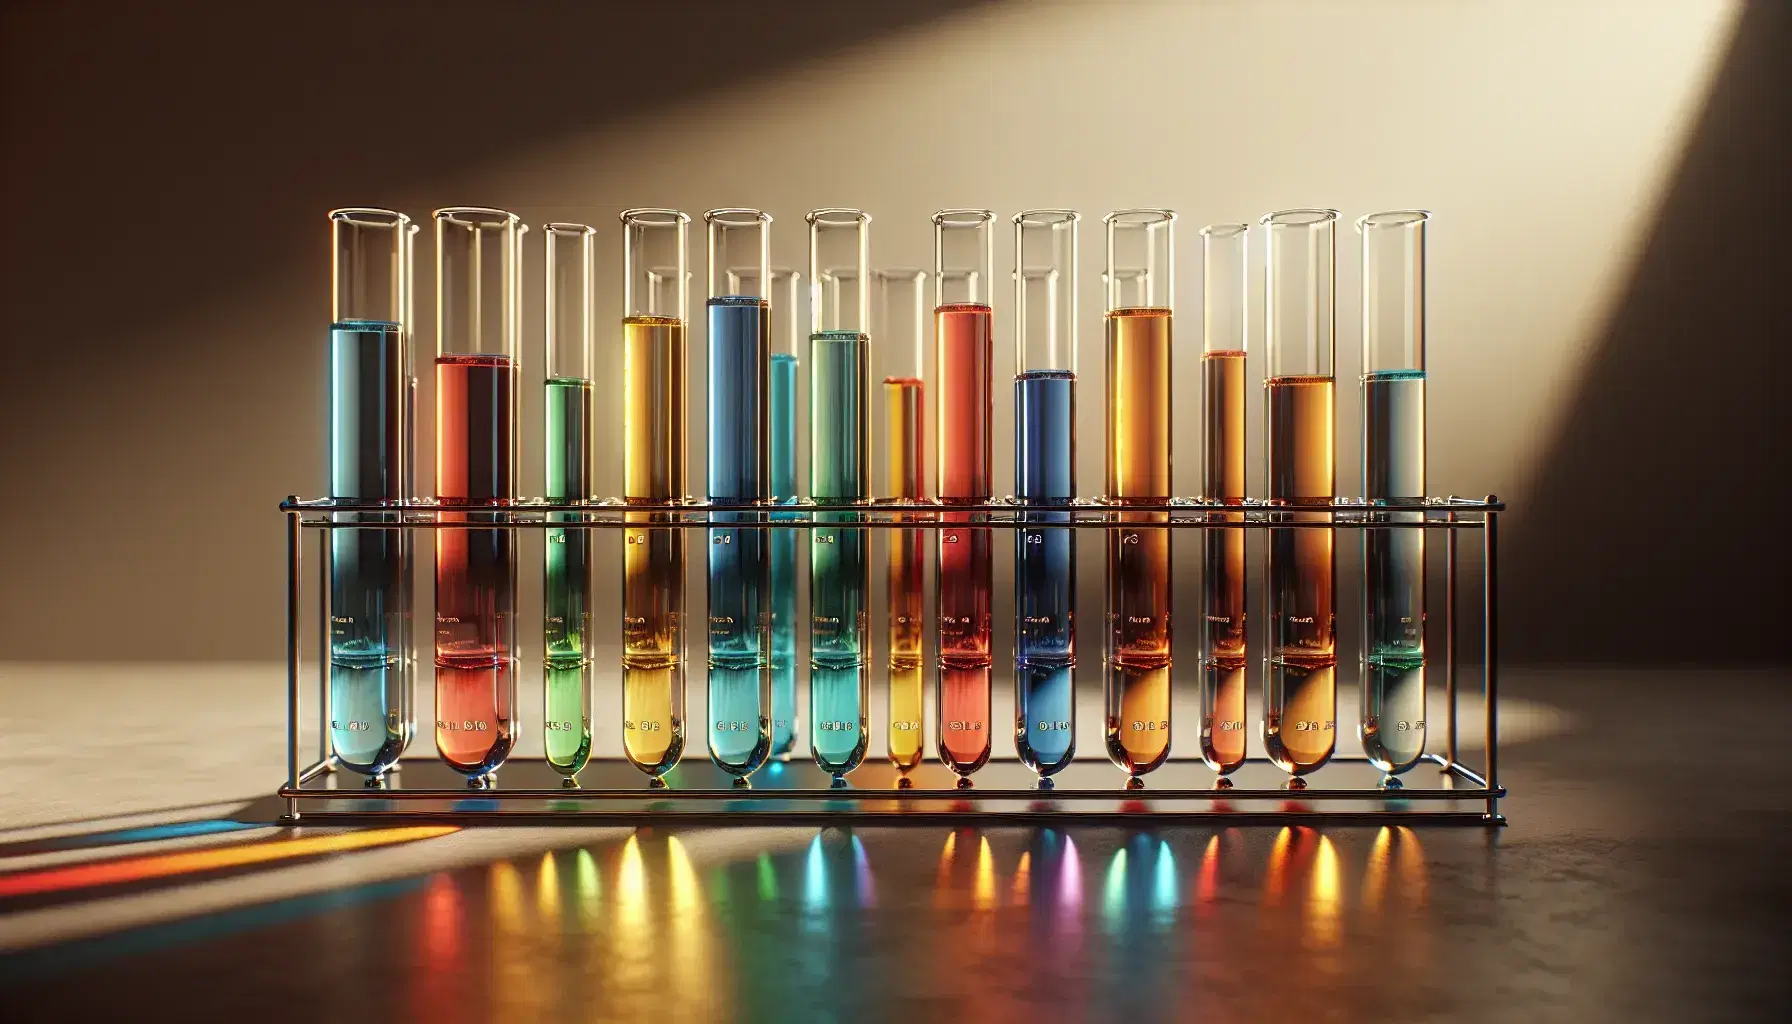 Tubos de ensayo de vidrio en gradilla metálica con líquidos de colores en gradiente del rojo al azul, iluminados y sin marcas visibles.